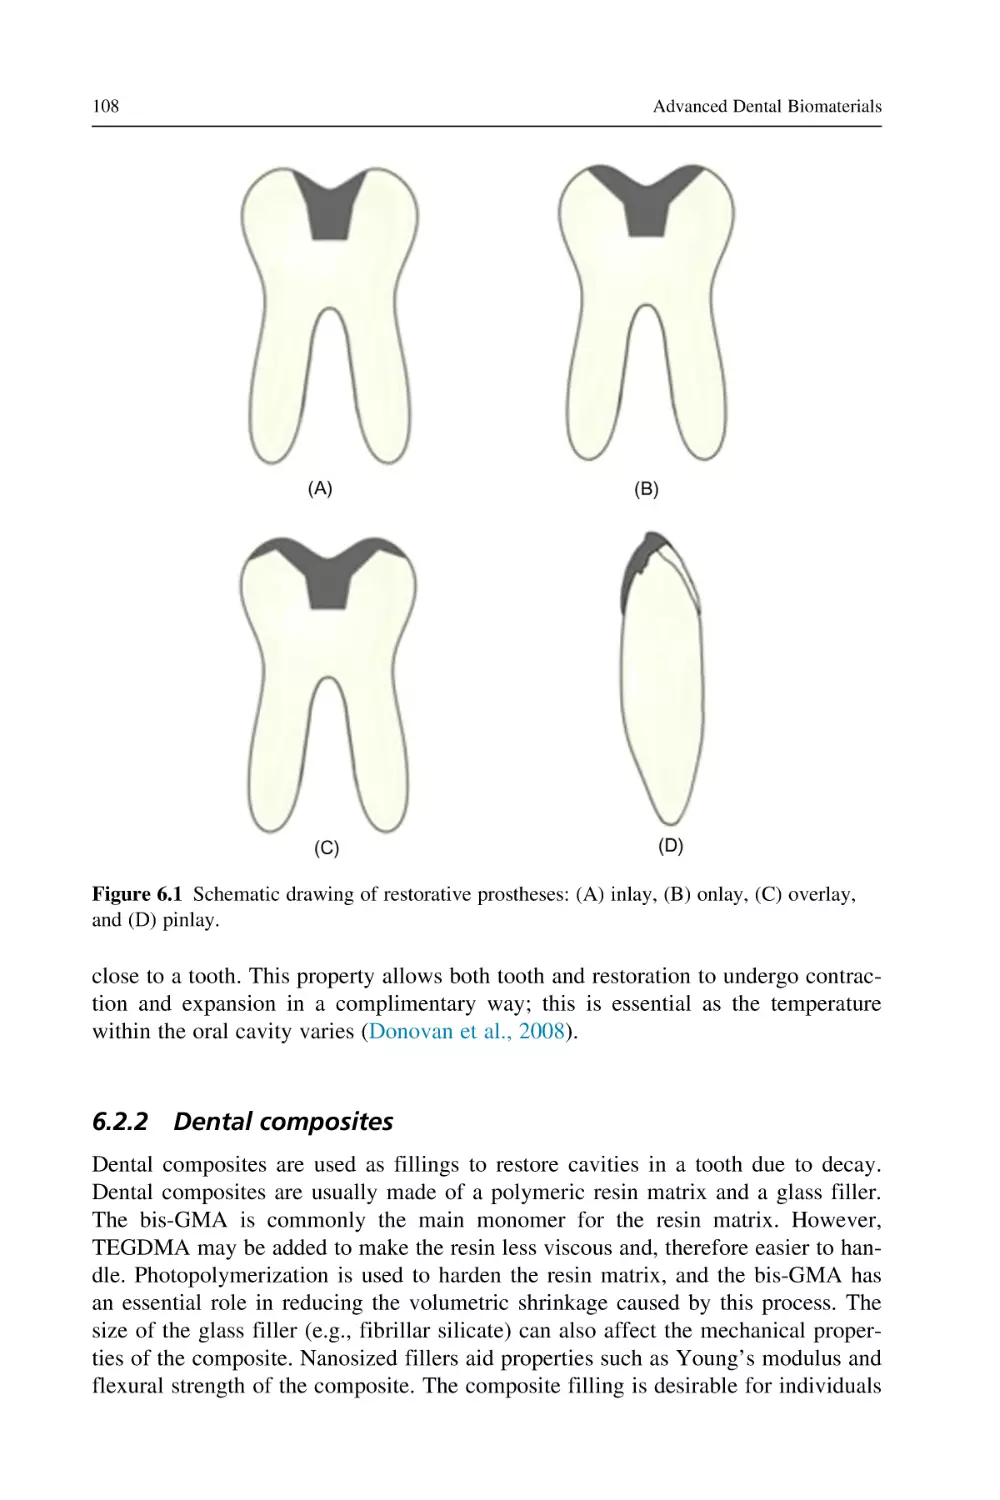 6.2.2 Dental composites